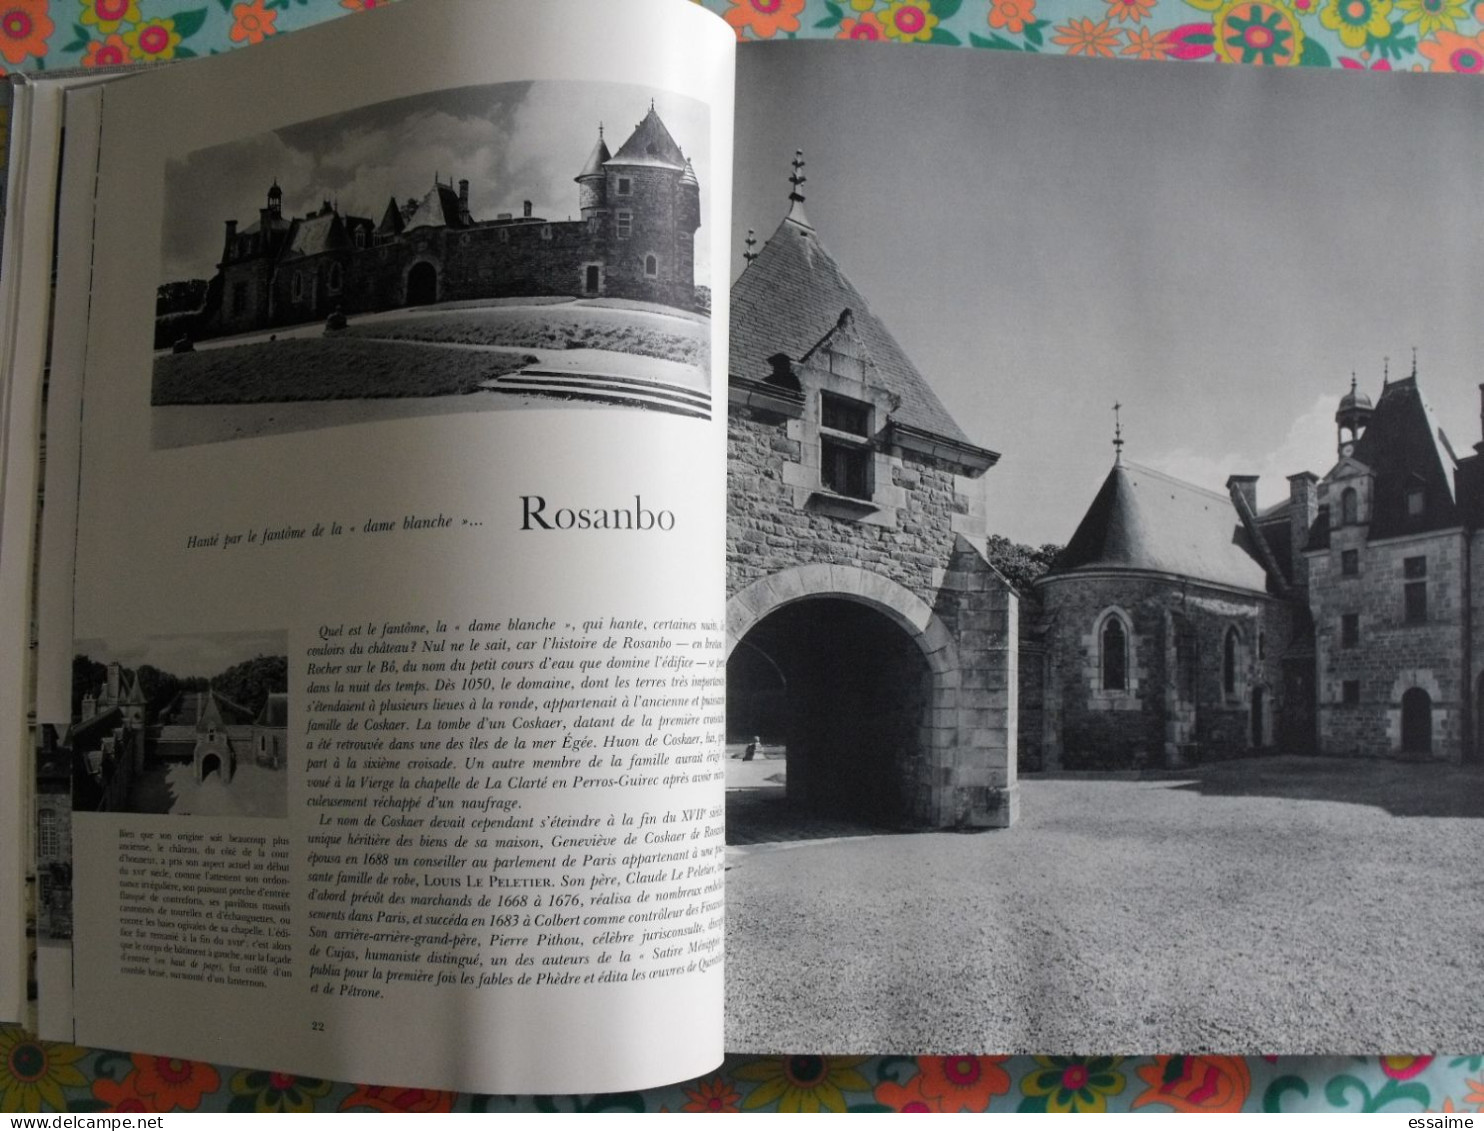 merveilles des châteaux de Bretagne et de Vendée. Hachette 1970. bretagne nantes poitou vendée. bien illustré